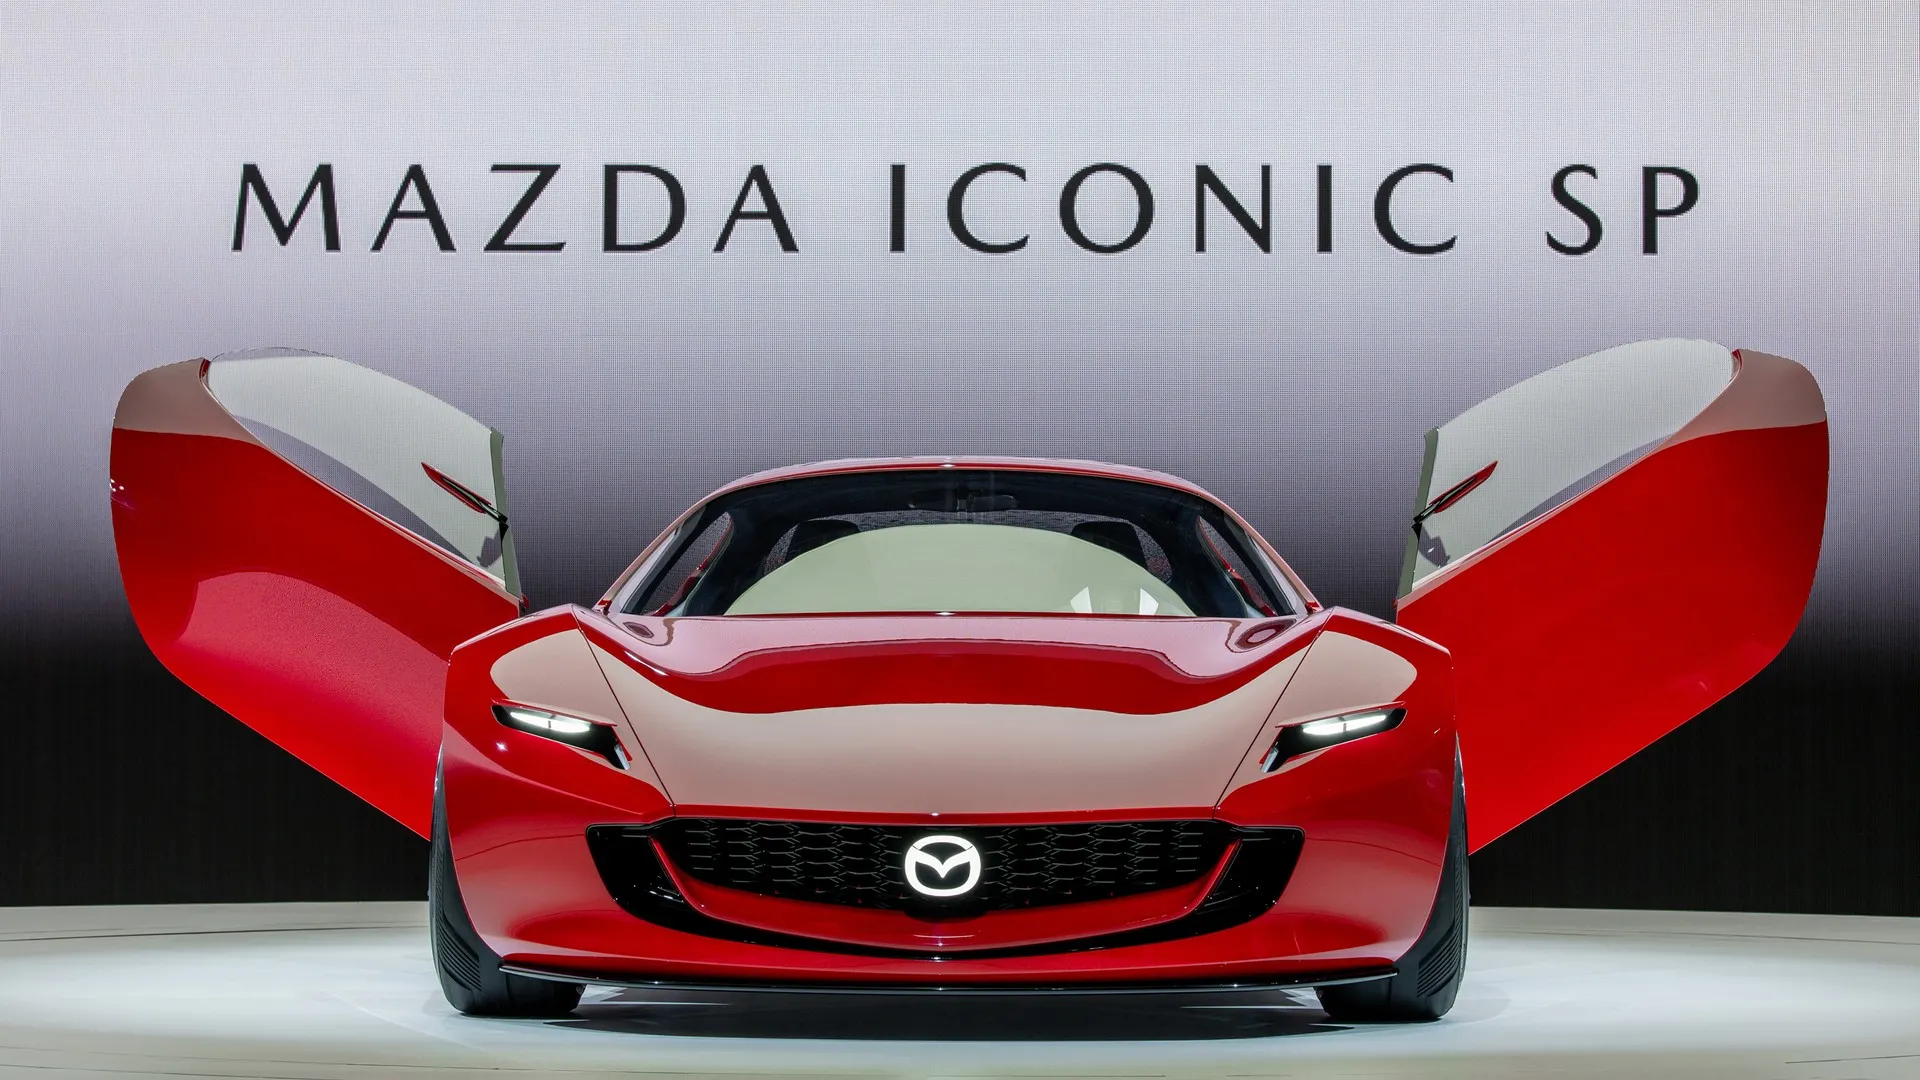 El Mazda ICONIC SP concept nos adelanta un futuro muy interesante para la firma japonesa